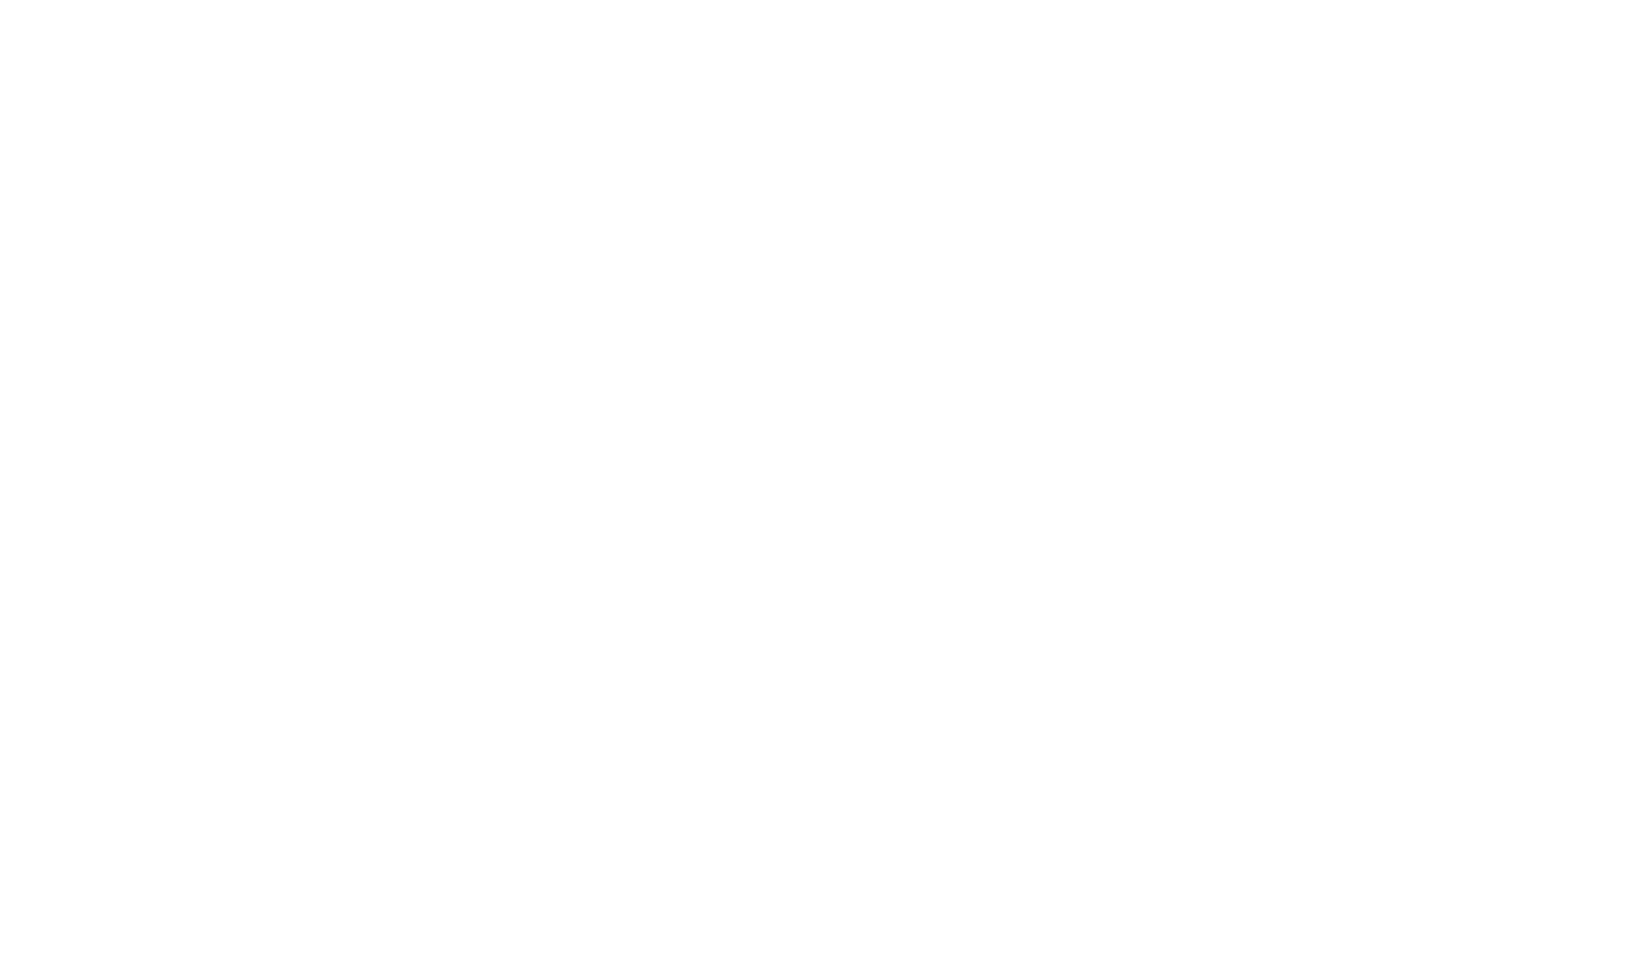 Colegio Americano del Sur